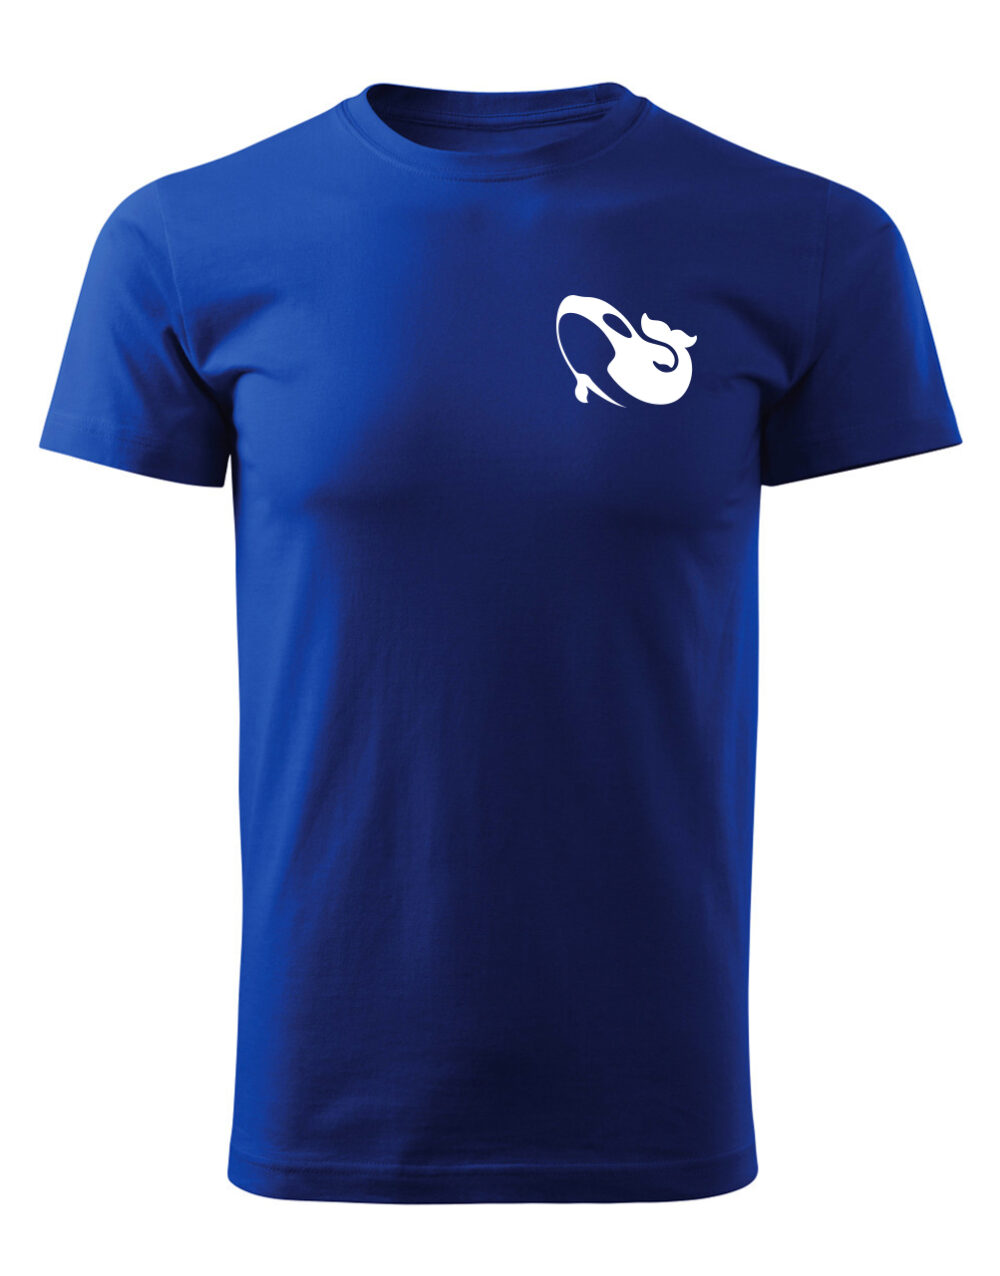 Pánské tričko s potiskem Kosatka královská modrá